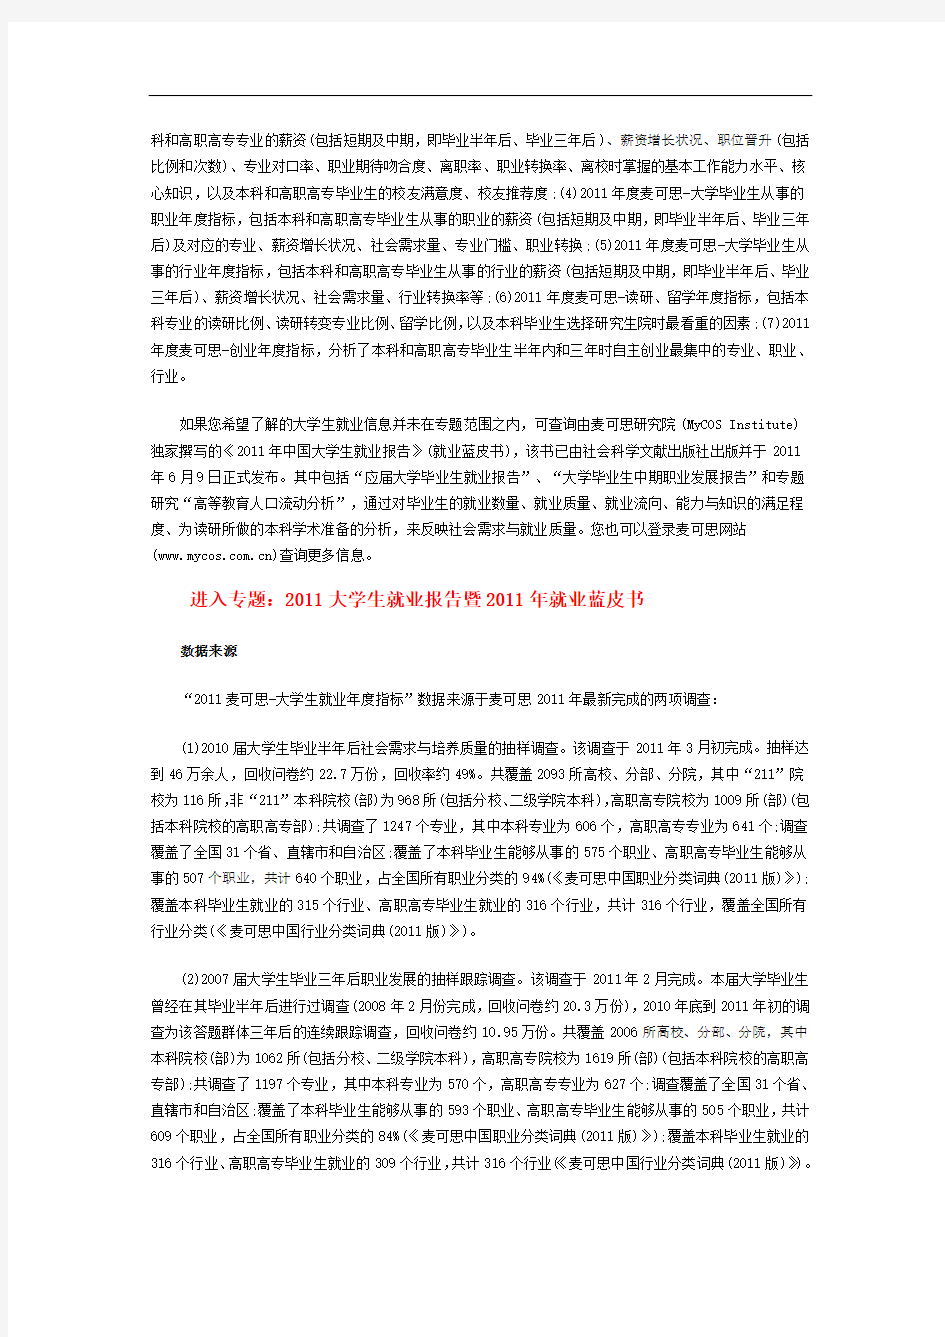 麦可思 2011年中国大学生就业报告汇总